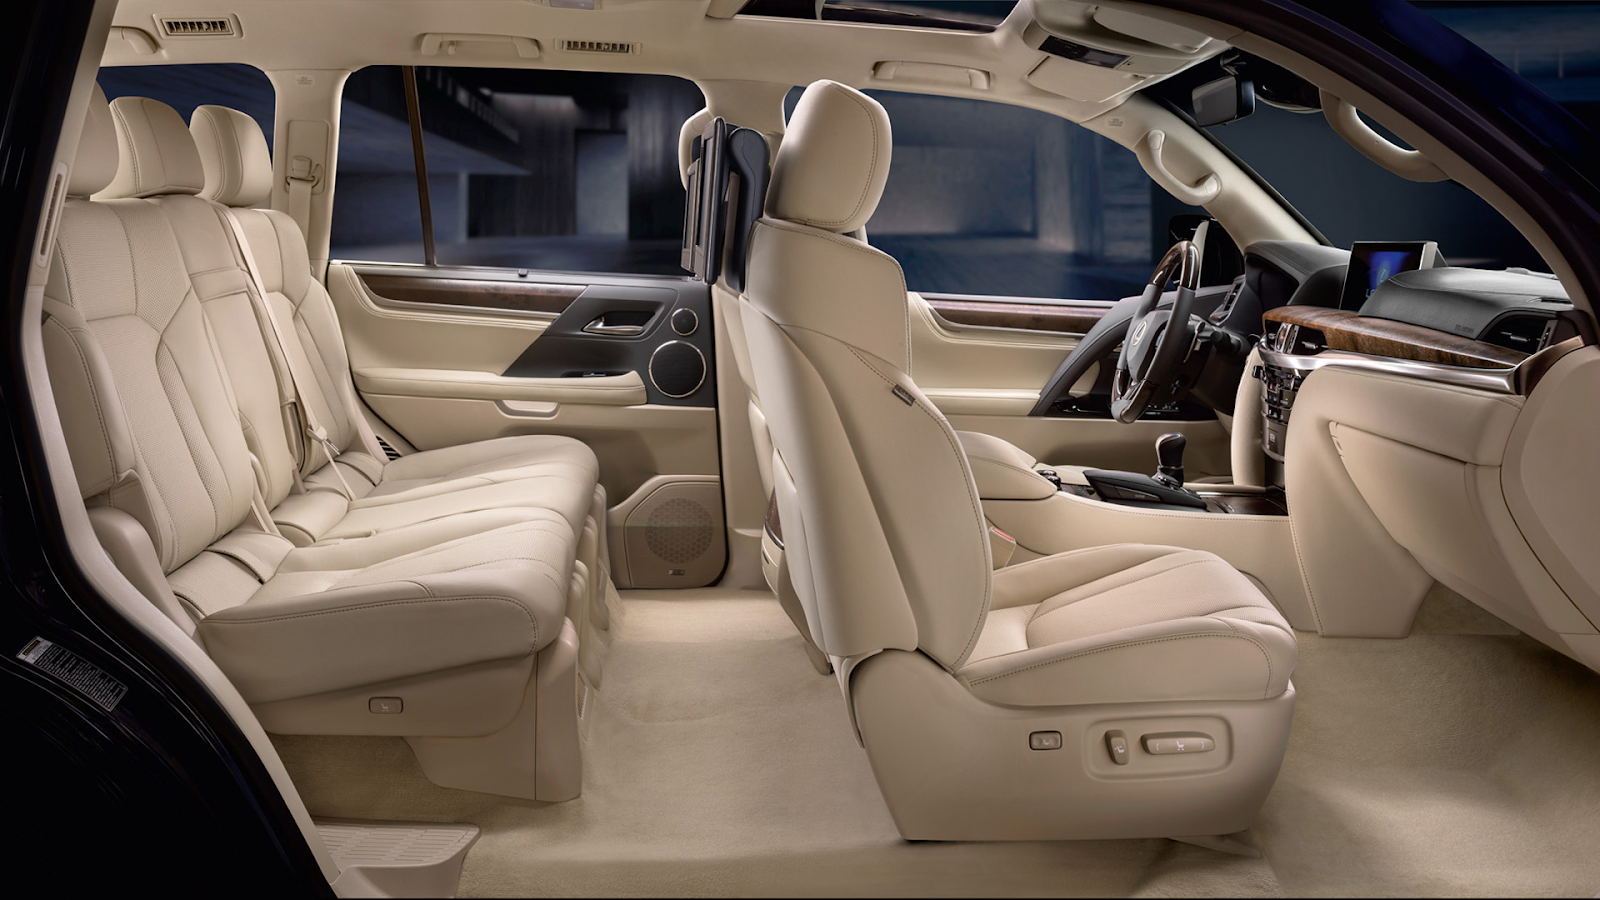 Không gian nội thất bên trong Lexus LX570 sang trọng, cho cảm giác thoải mái với mọi người ngồi trên xe 